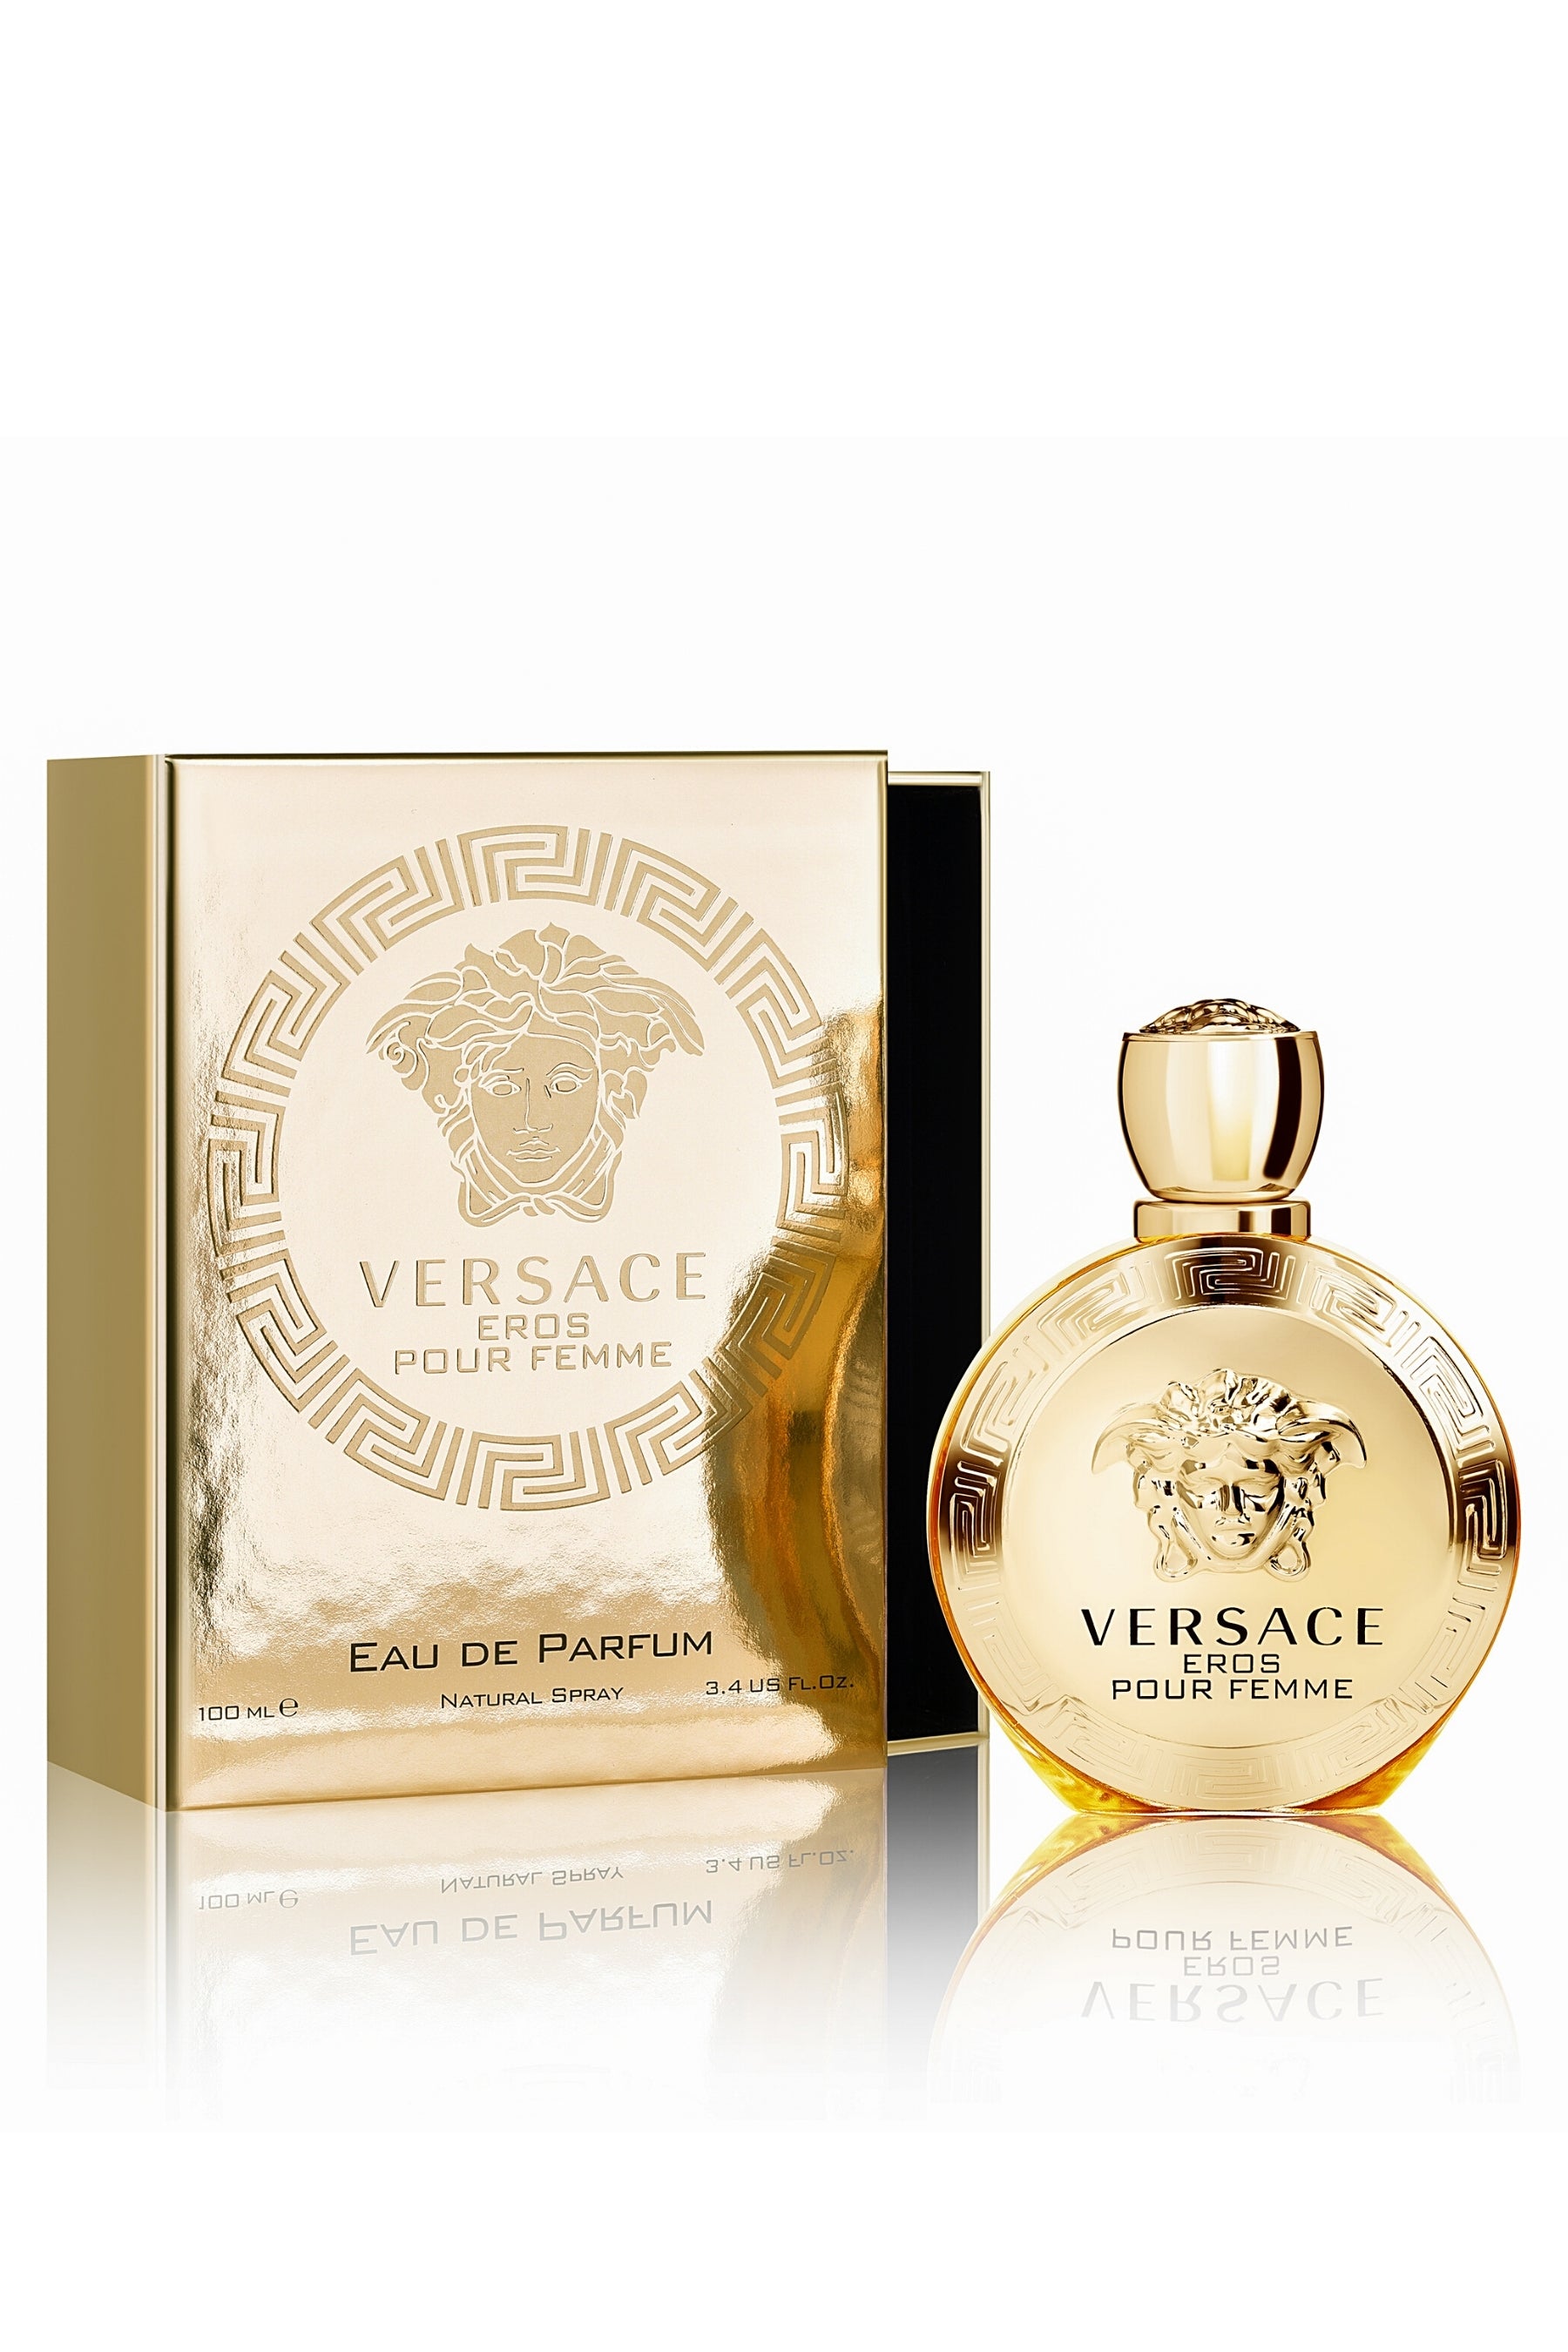 Pour | Scents Eros | Femme REBL Perfume Versace